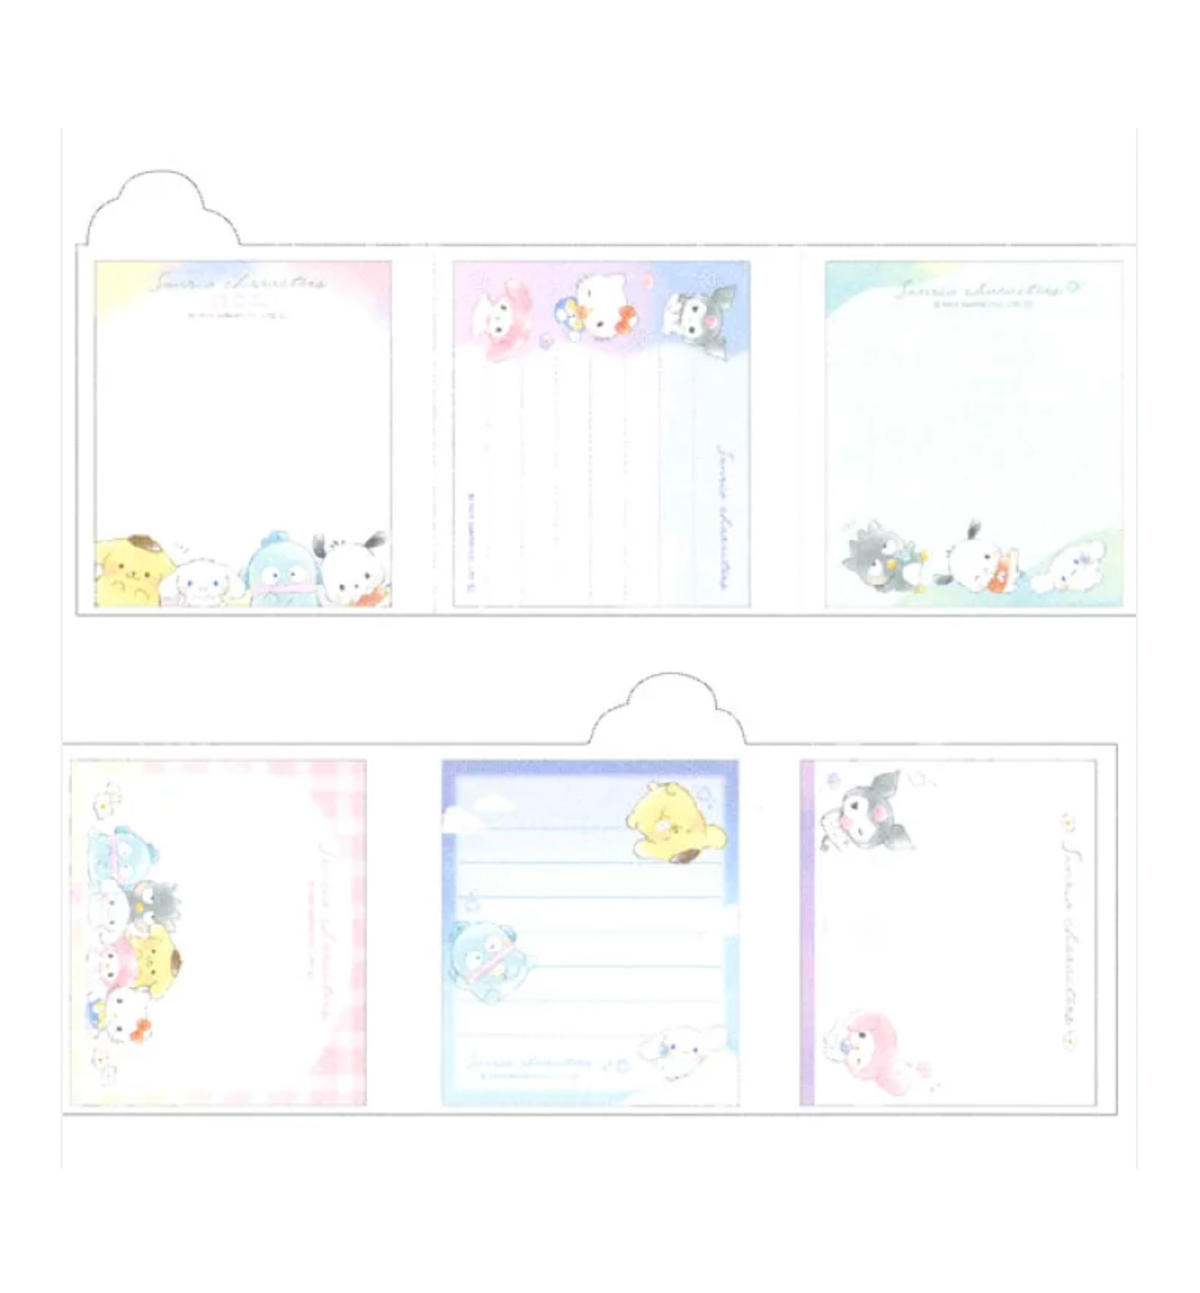 Sanrio Booklet Memopad [Characters]